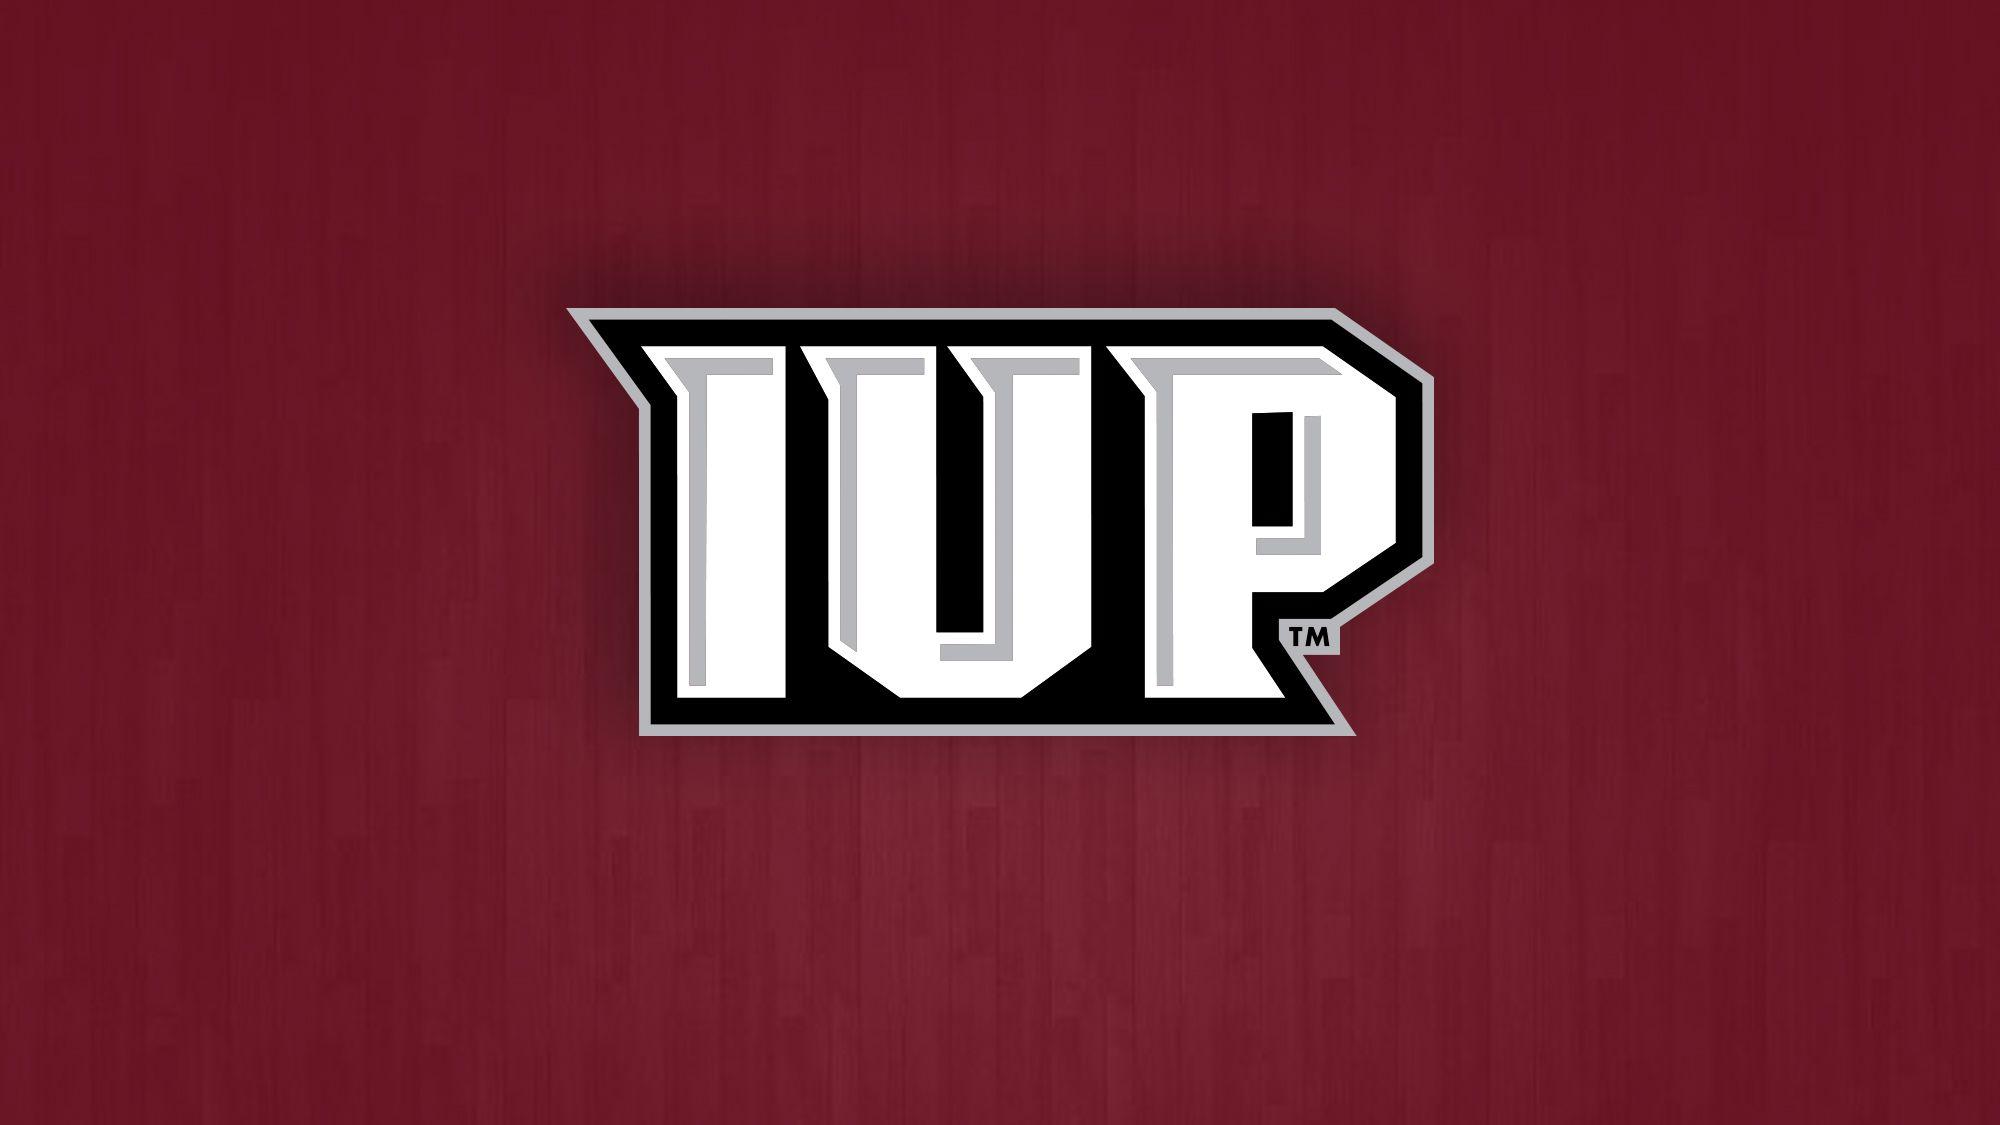 IUP Logo - Stamp Scores 18 in Return as IUP's Upset Bid Falls Short to No. 3 ...